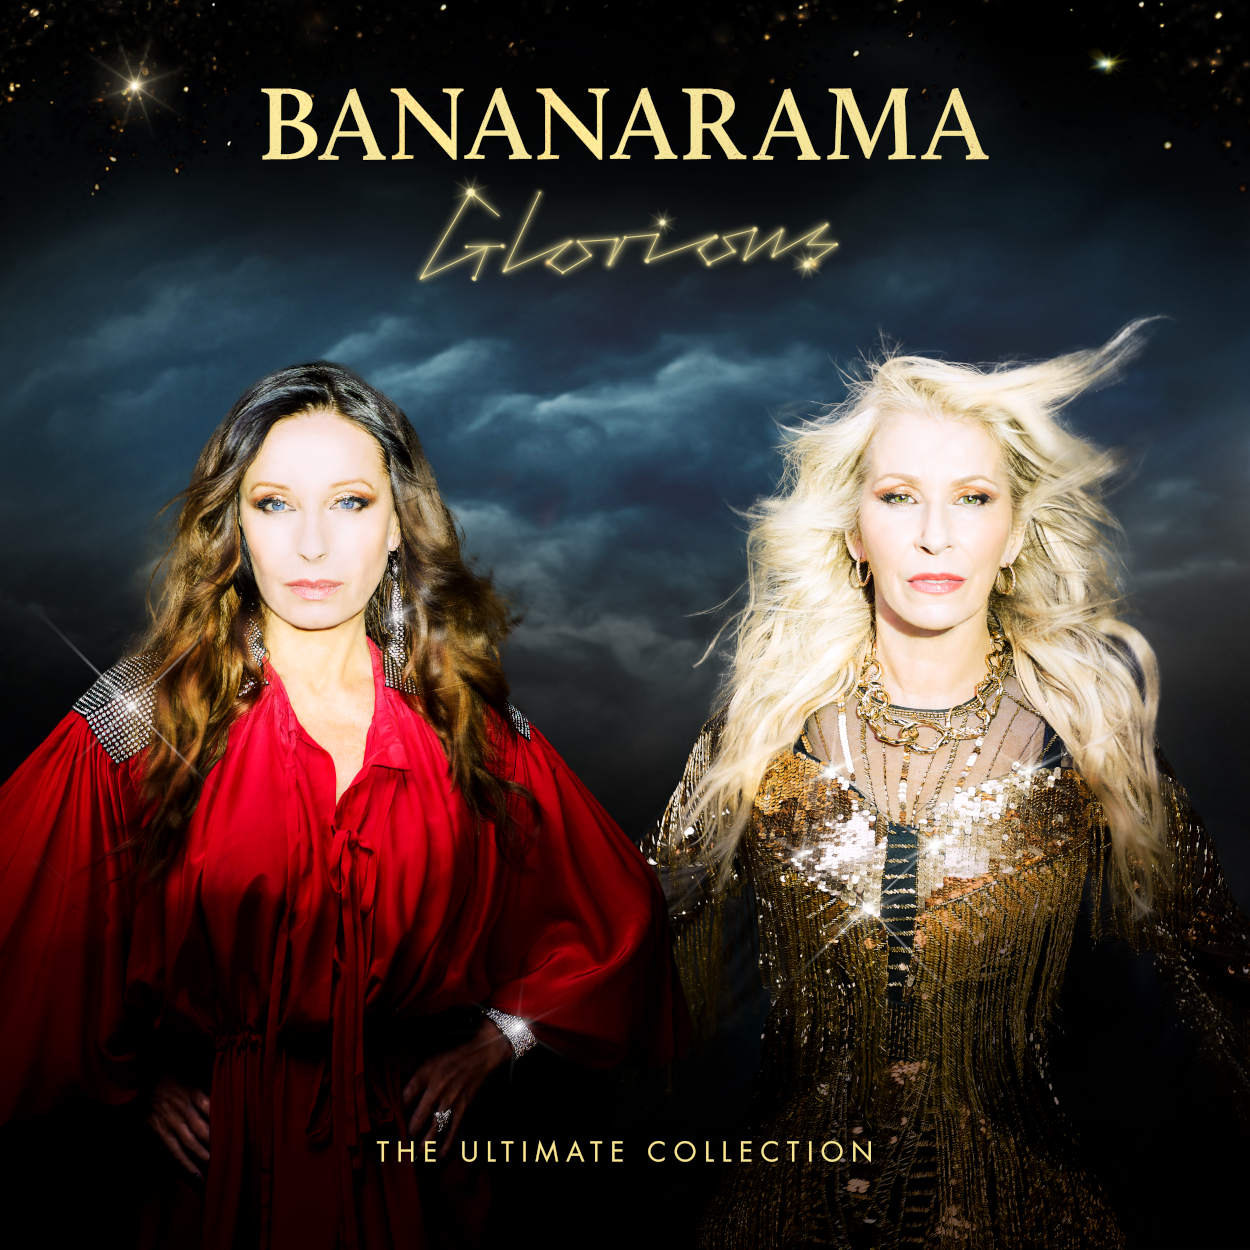 Bananarama / “Megarama”: The Mixes / three-disc remix set 